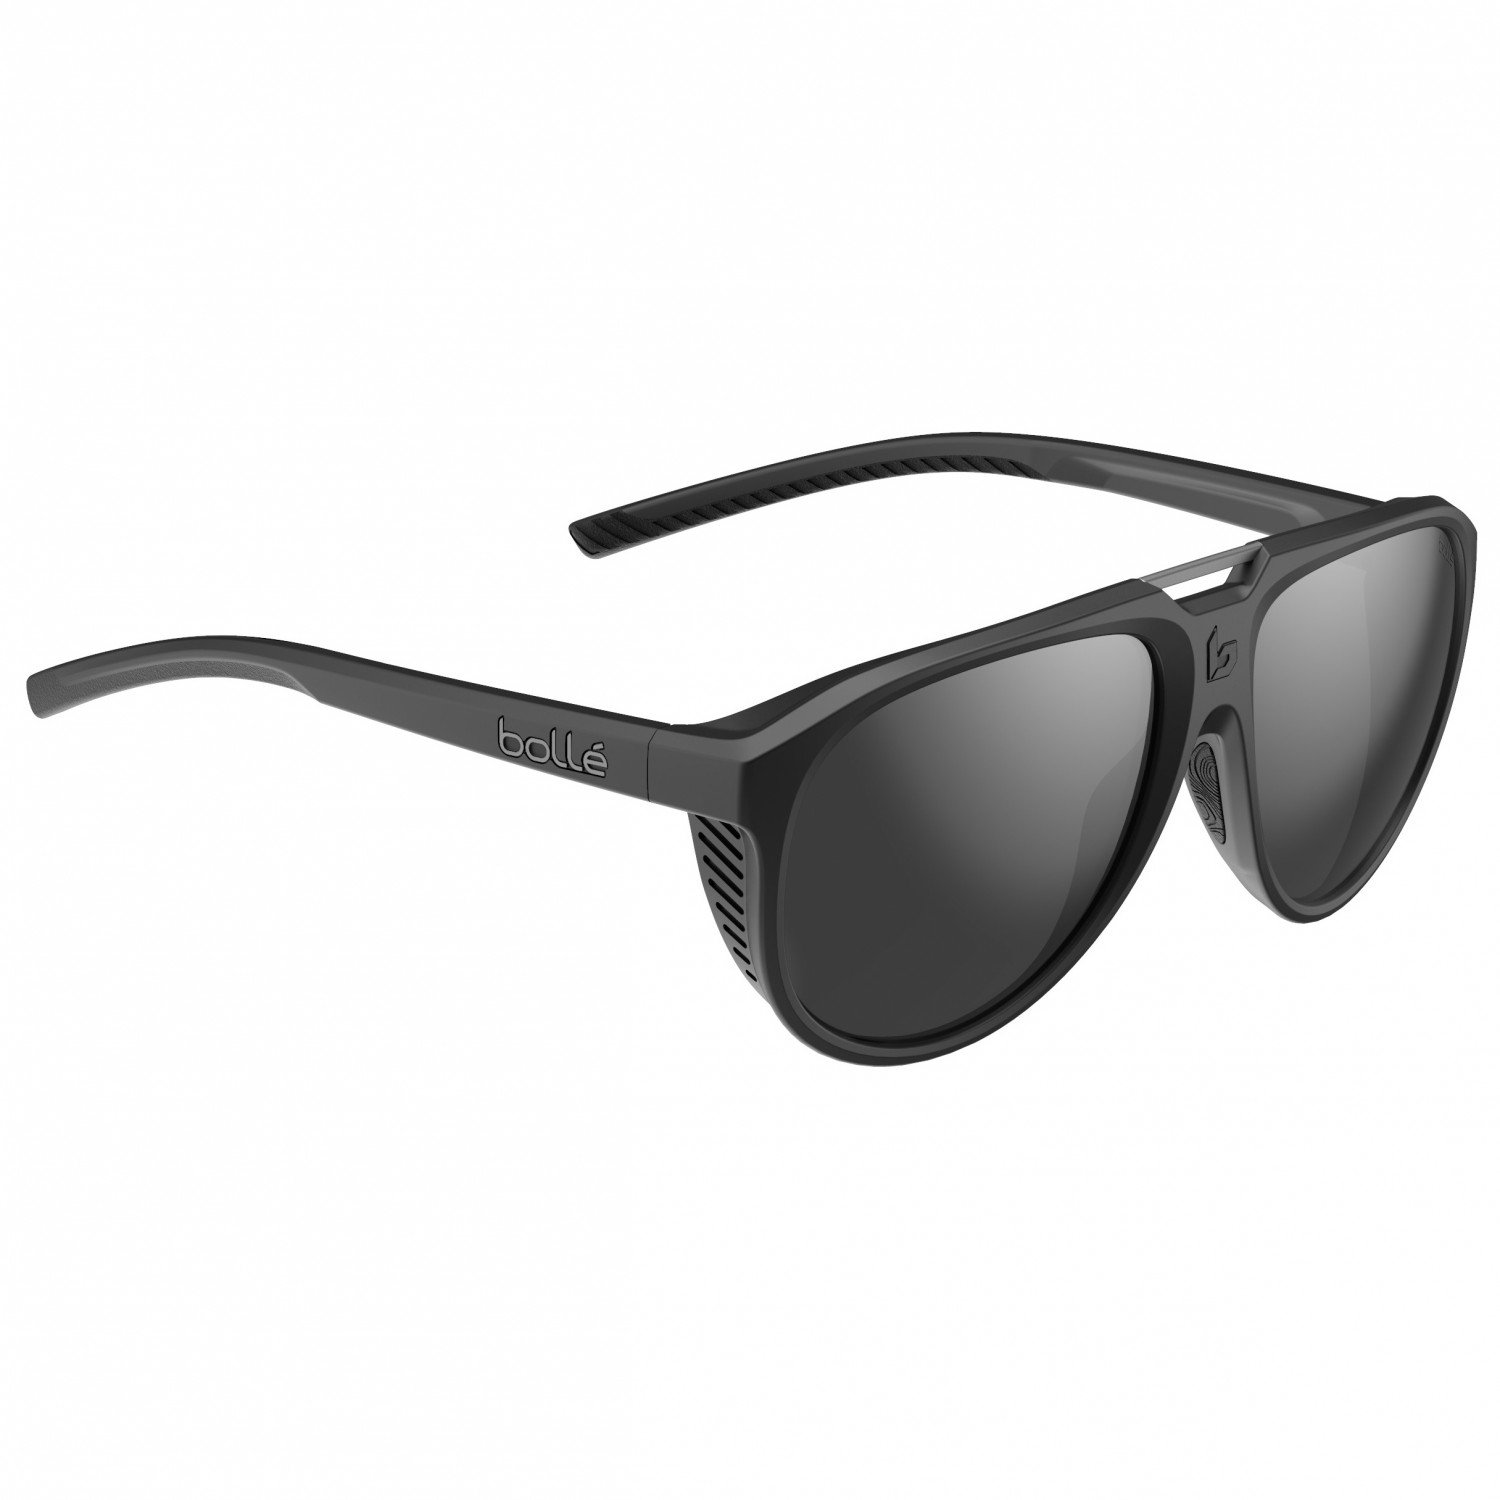 Солнцезащитные очки Bollé Euphoria S3 (VLT 12%), цвет Black Matte